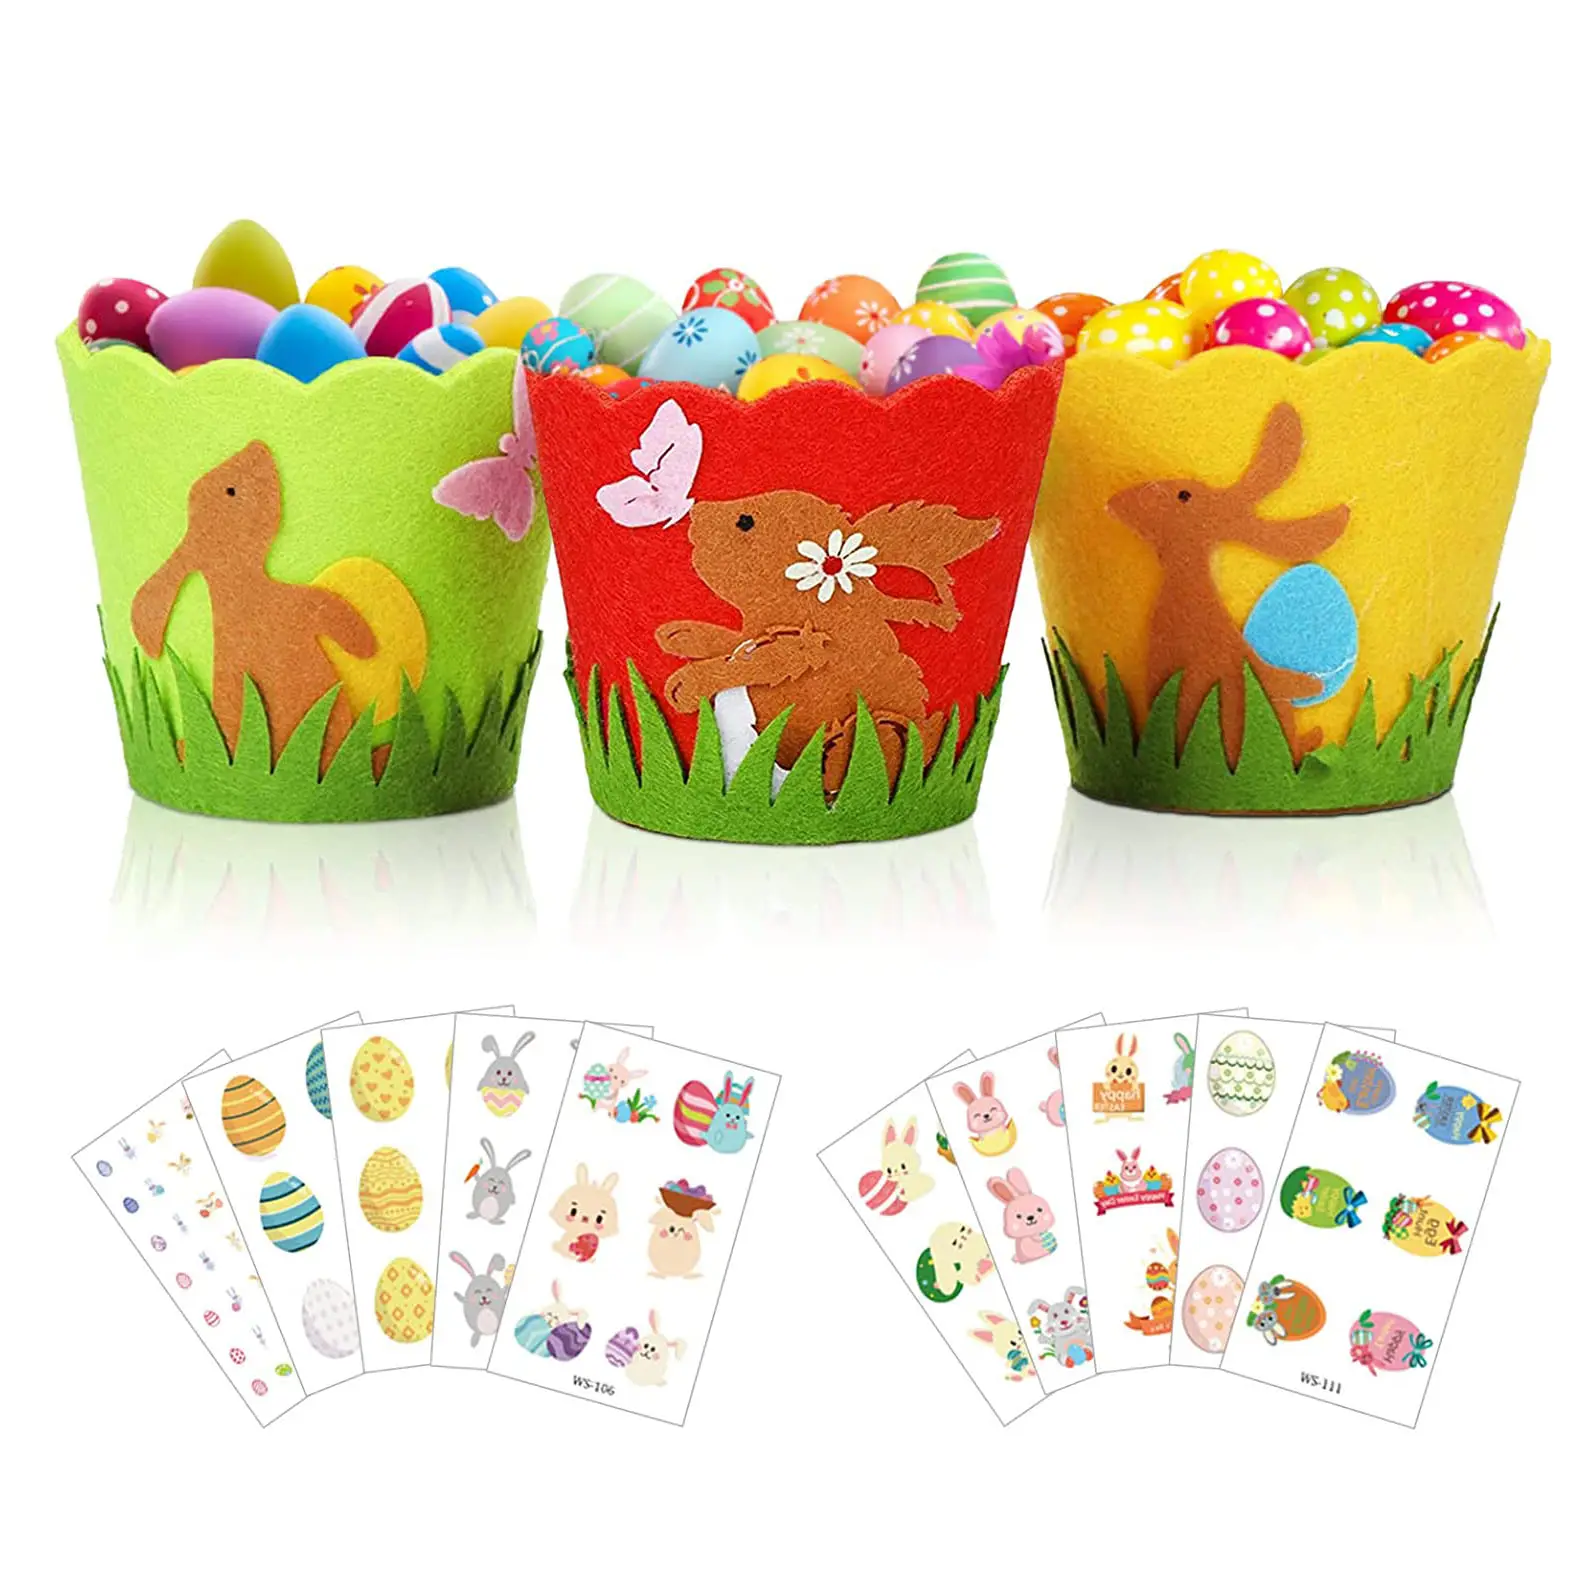 16x16cm sublimazione rotonda feltro Easter Bunny cestini pasqua Egg Hunt Candy sacchetti regalo per bambini decorazione a tema pasquale